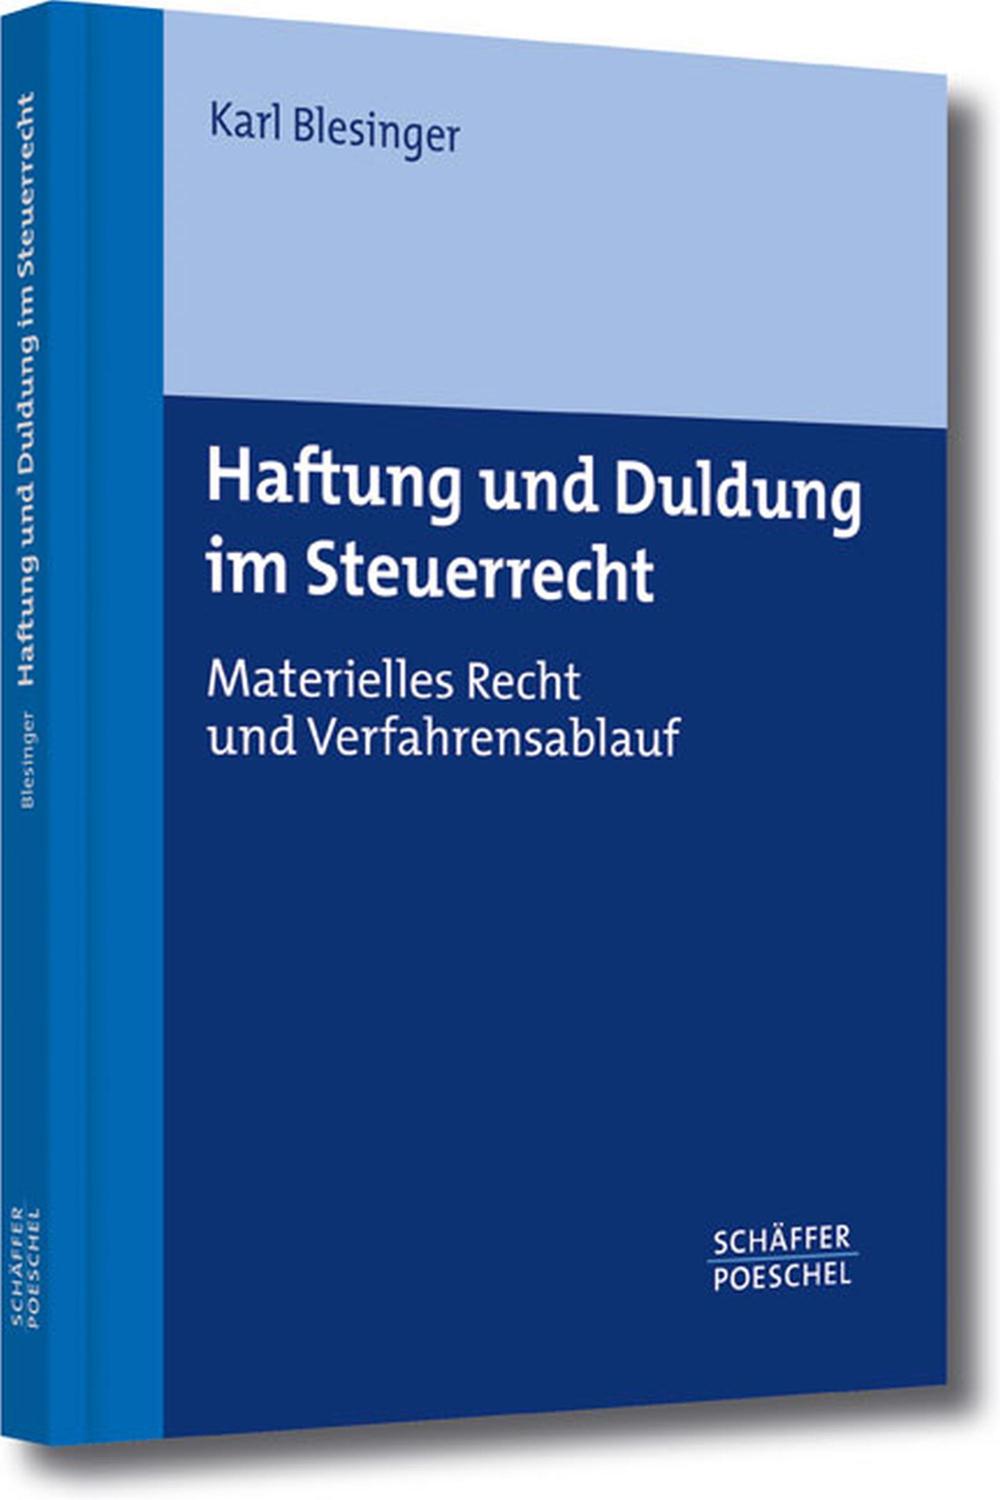 Haftung und Duldung im Steuerrecht - Karl Blesinger